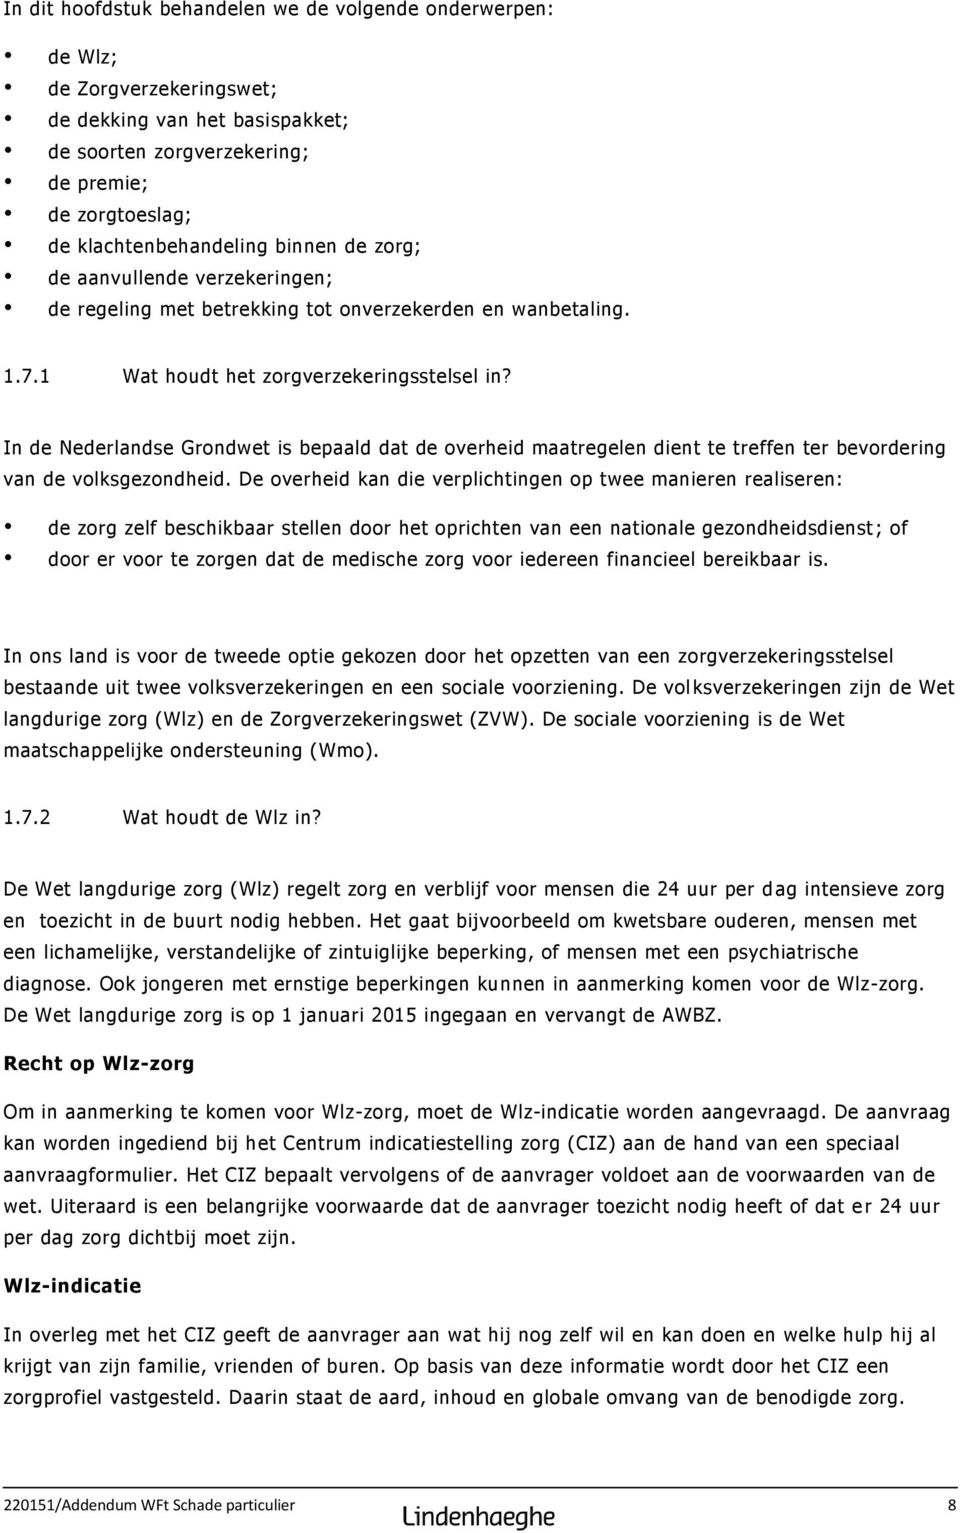 In de Nederlandse Grondwet is bepaald dat de overheid maatregelen dient te treffen ter bevordering van de volksgezondheid.